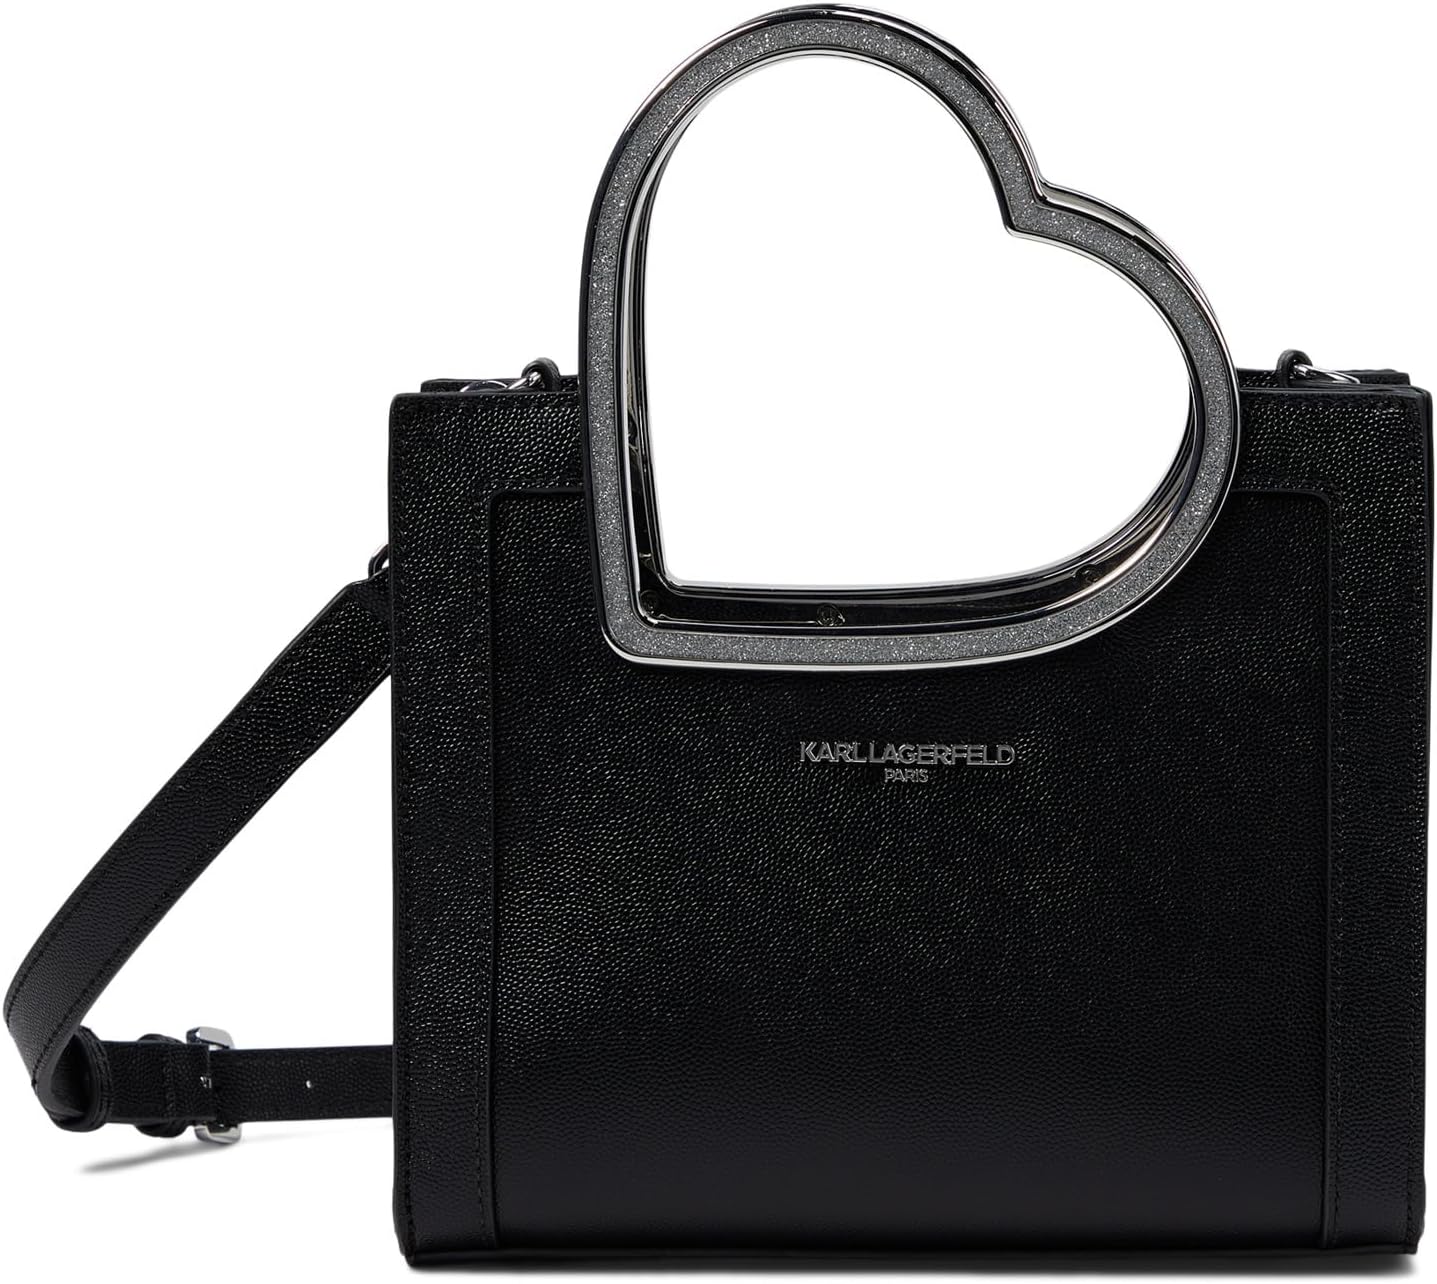 Маленькая сумка-тоут в стиле модерн Karl Lagerfeld Paris, цвет Black/Silver кроссовки karl lagerfeld kapri ikonic twin black silver